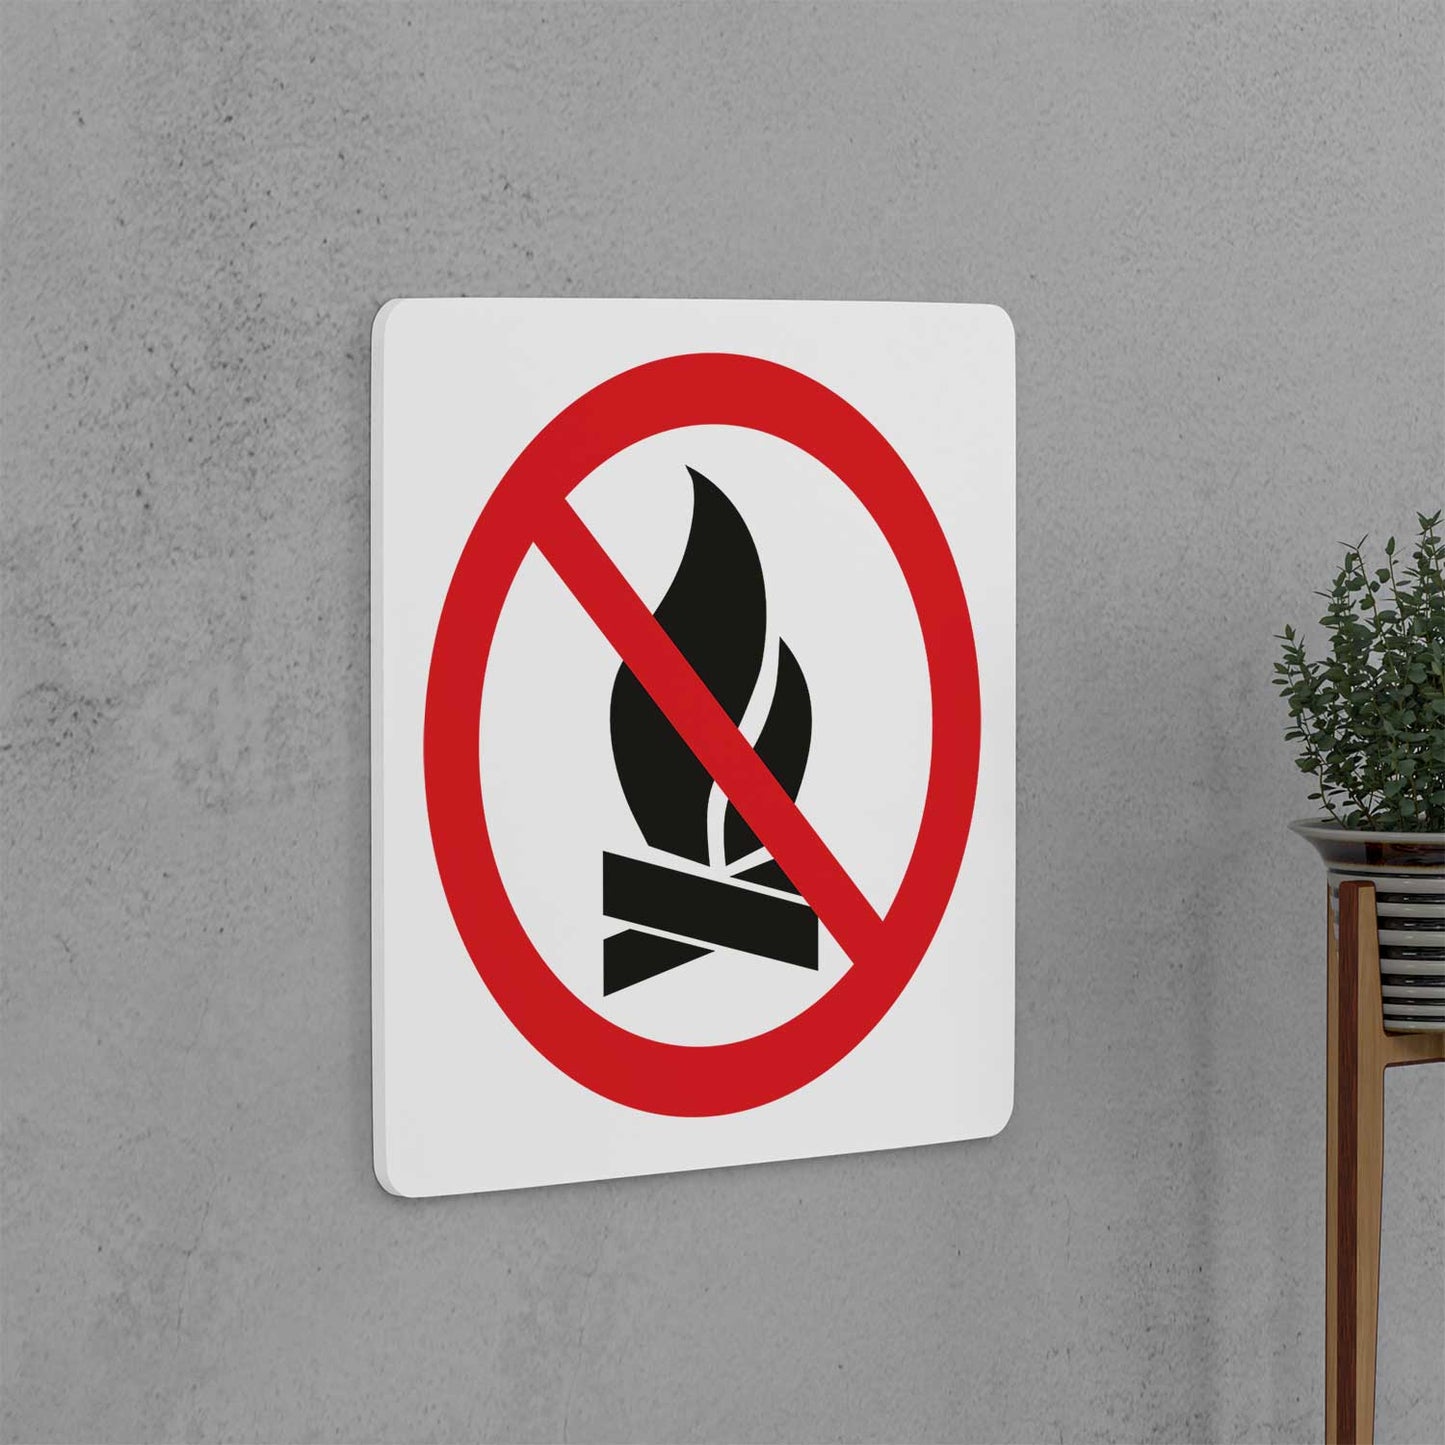 No Open Flames Sign